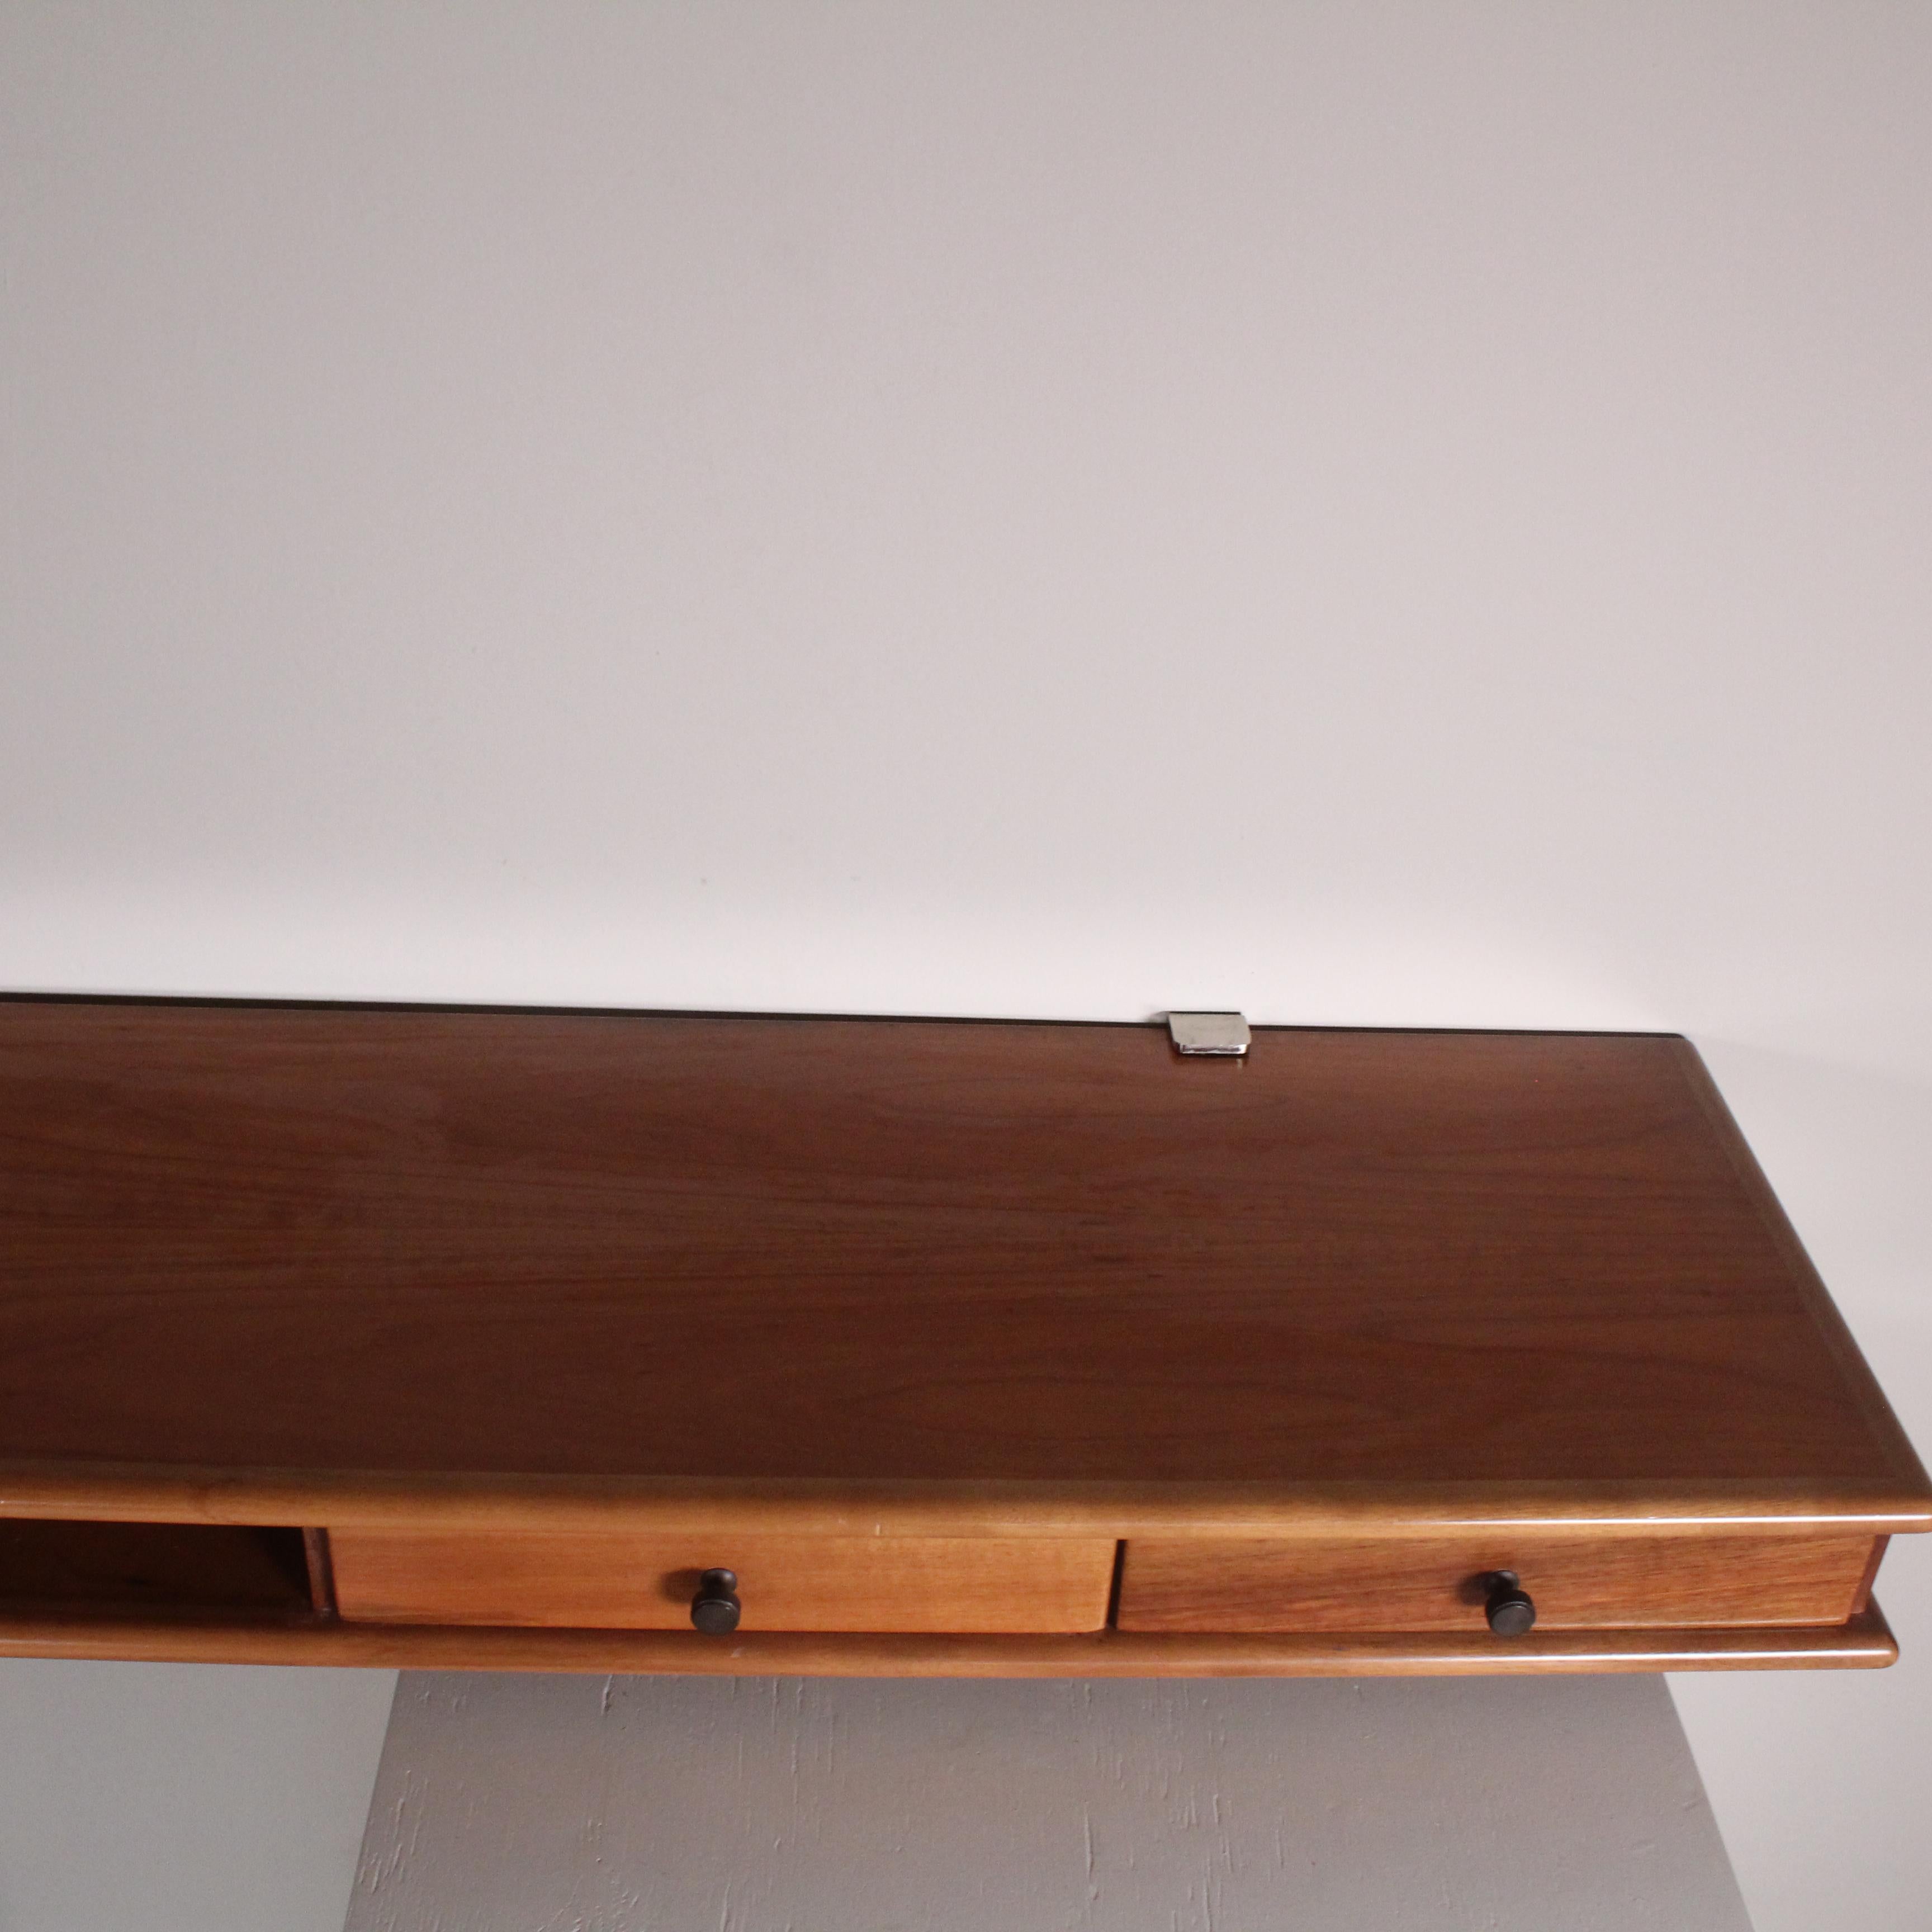 Cette table console a été créée par Gianfranco Frattini pour Bernini 1960. Fabriqué avec des matériaux de haute qualité et une attention méticuleuse aux détails, il représente l'excellence dans la production de meubles italiens. Sa présence